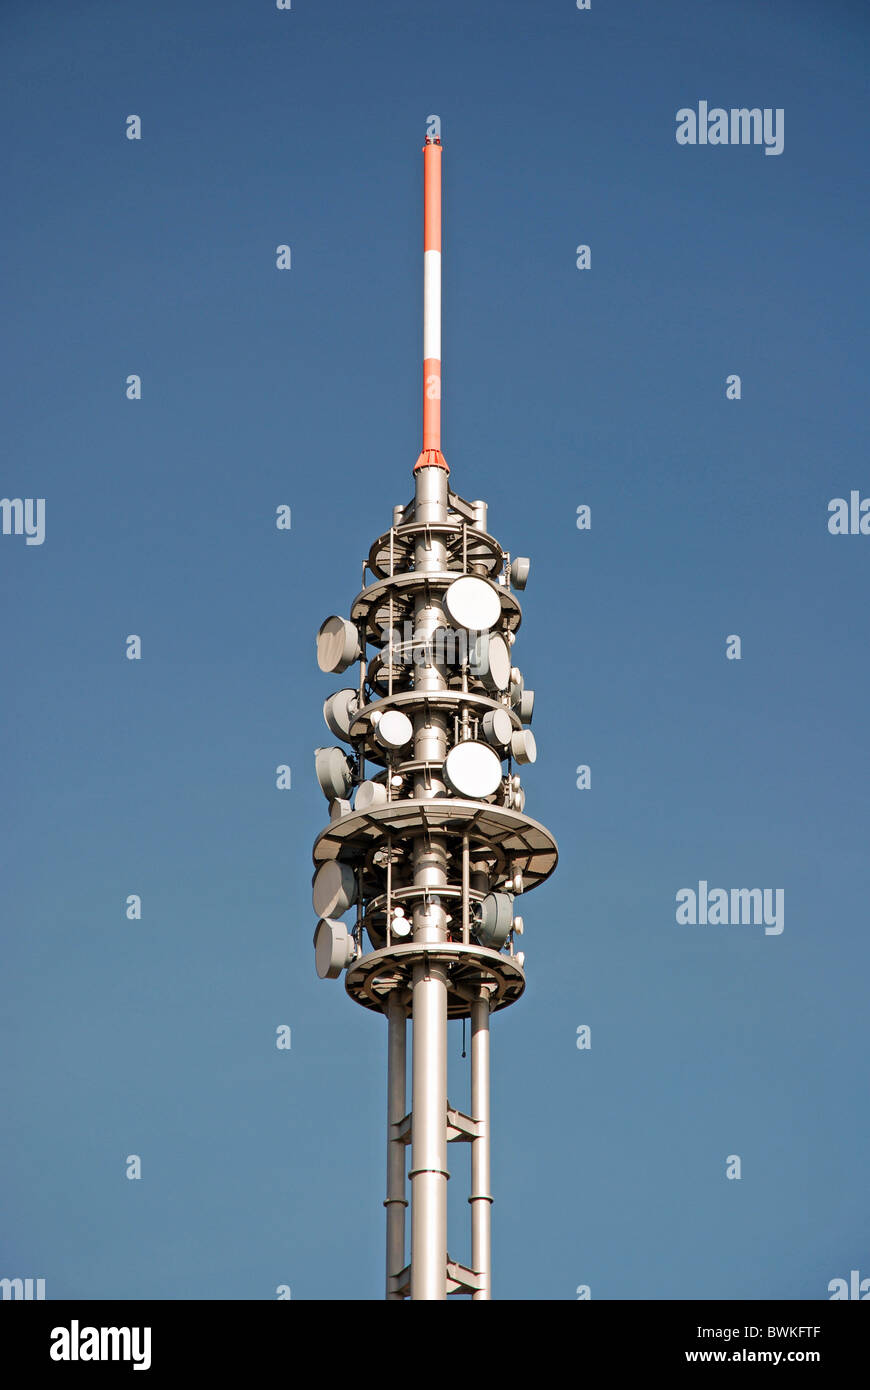 Antennes radio Banque de photographies et d'images à haute résolution -  Alamy